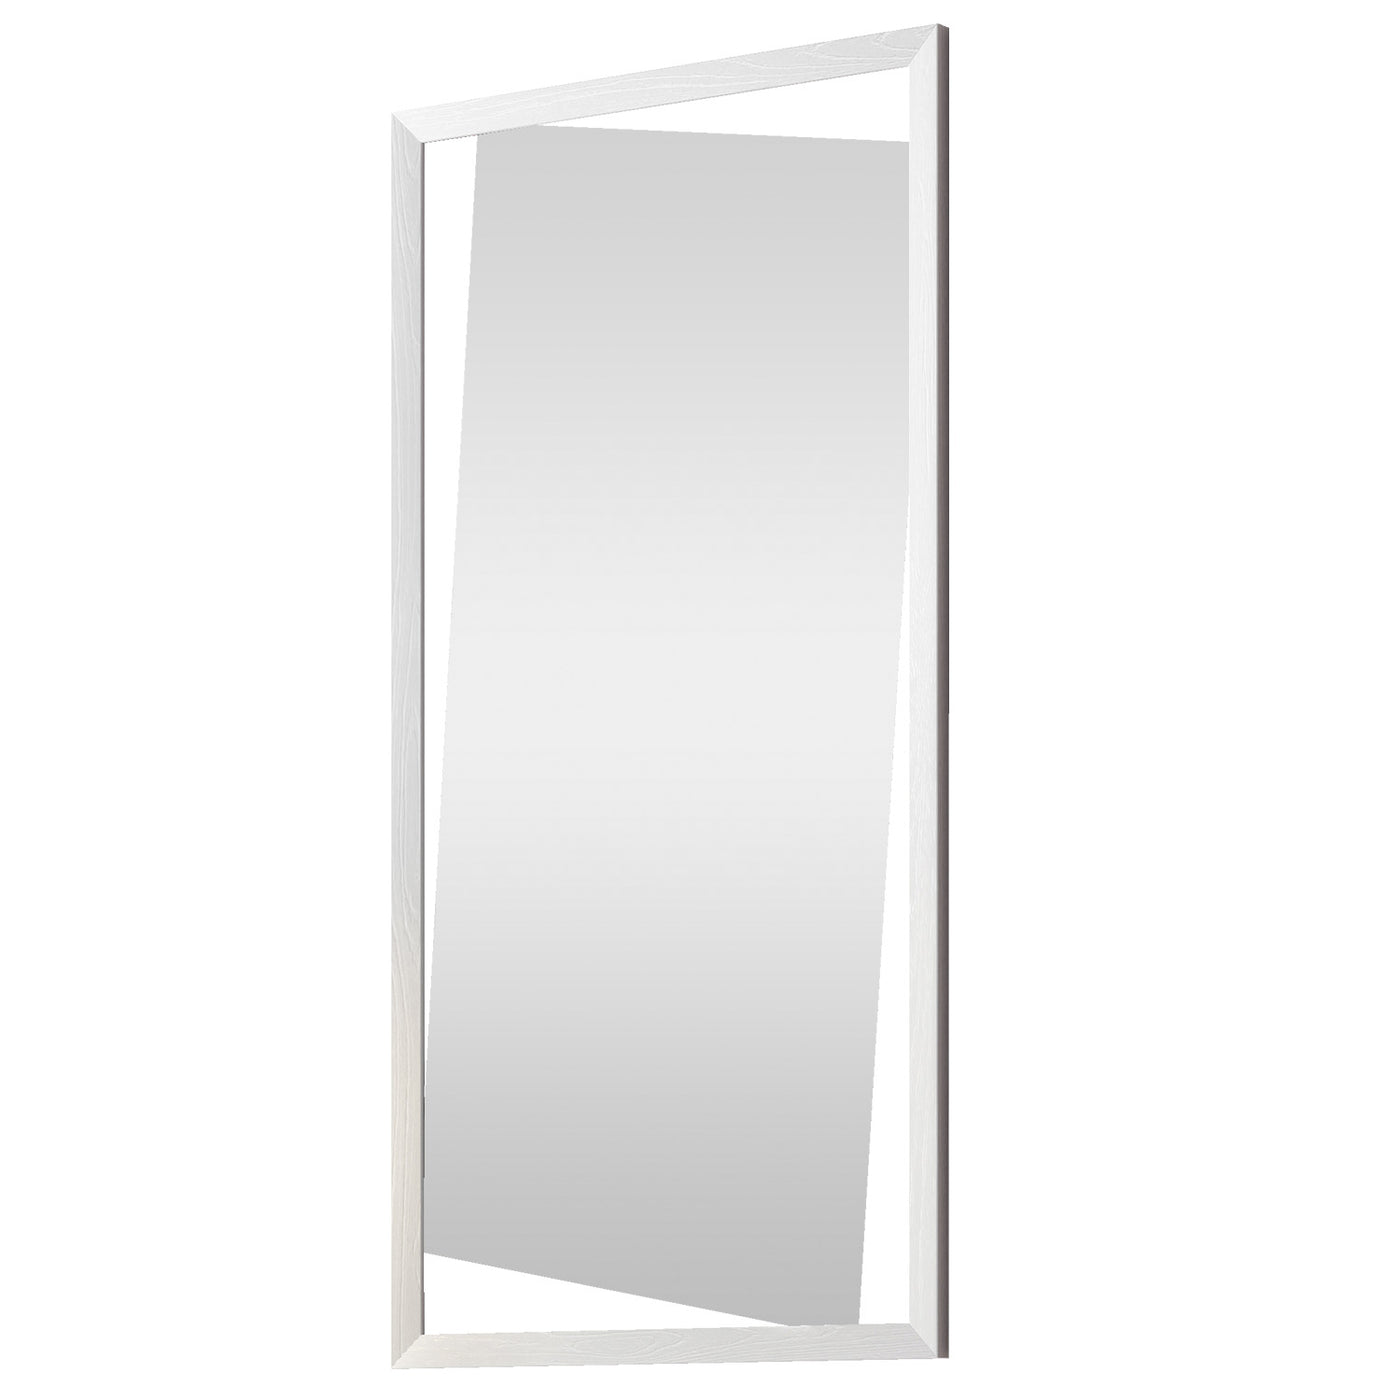 Specchio da parete LUGANO bianco